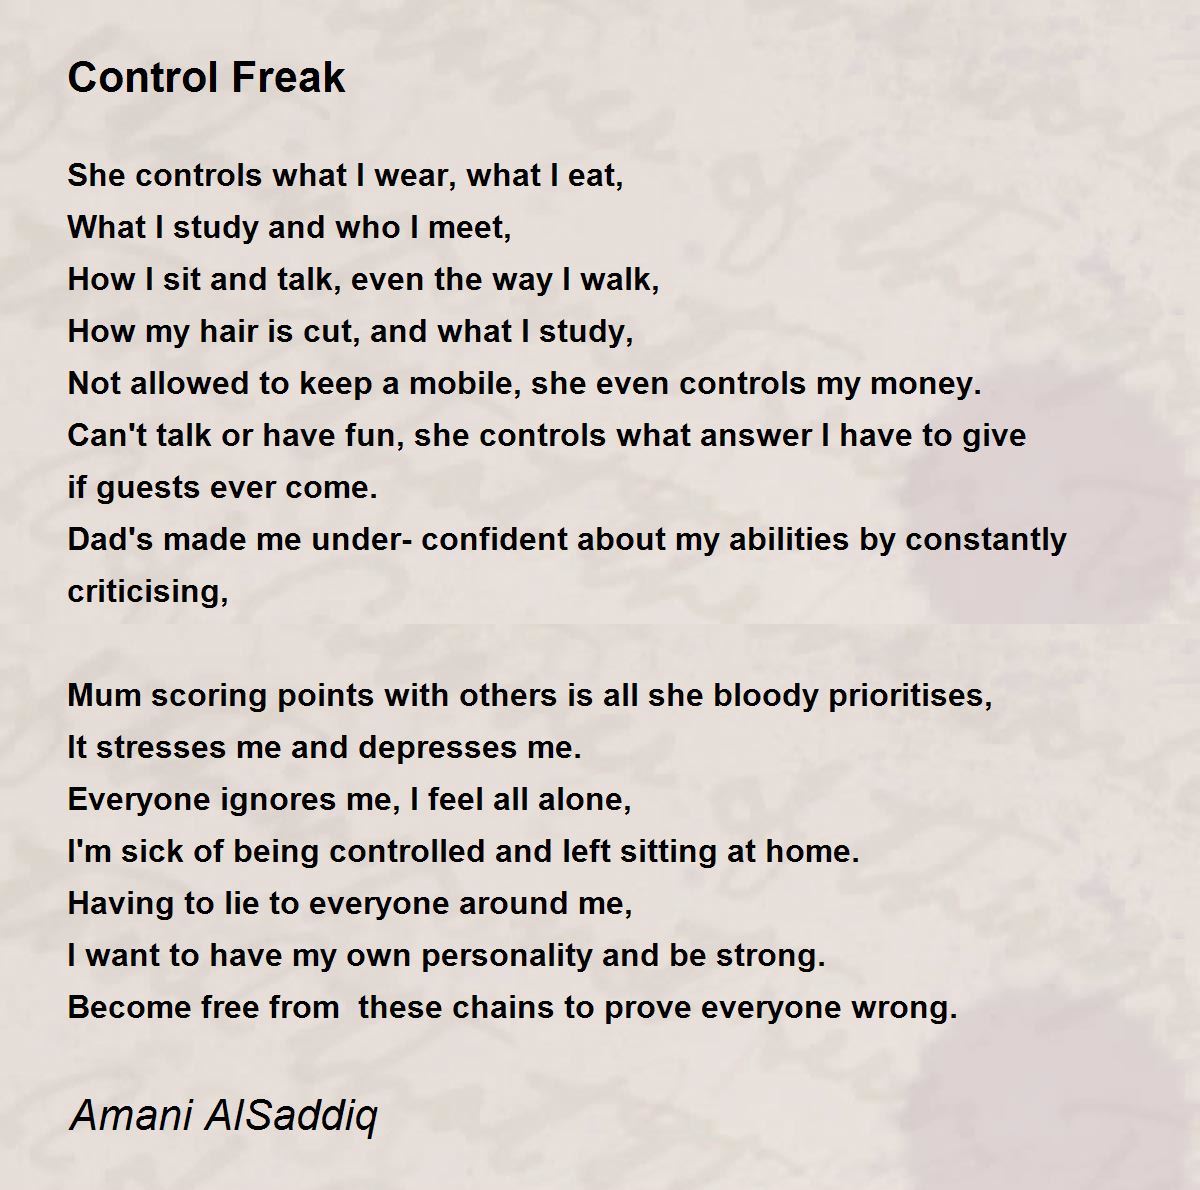 Control Freak - Control Freak Poem by Amani AlSaddiq